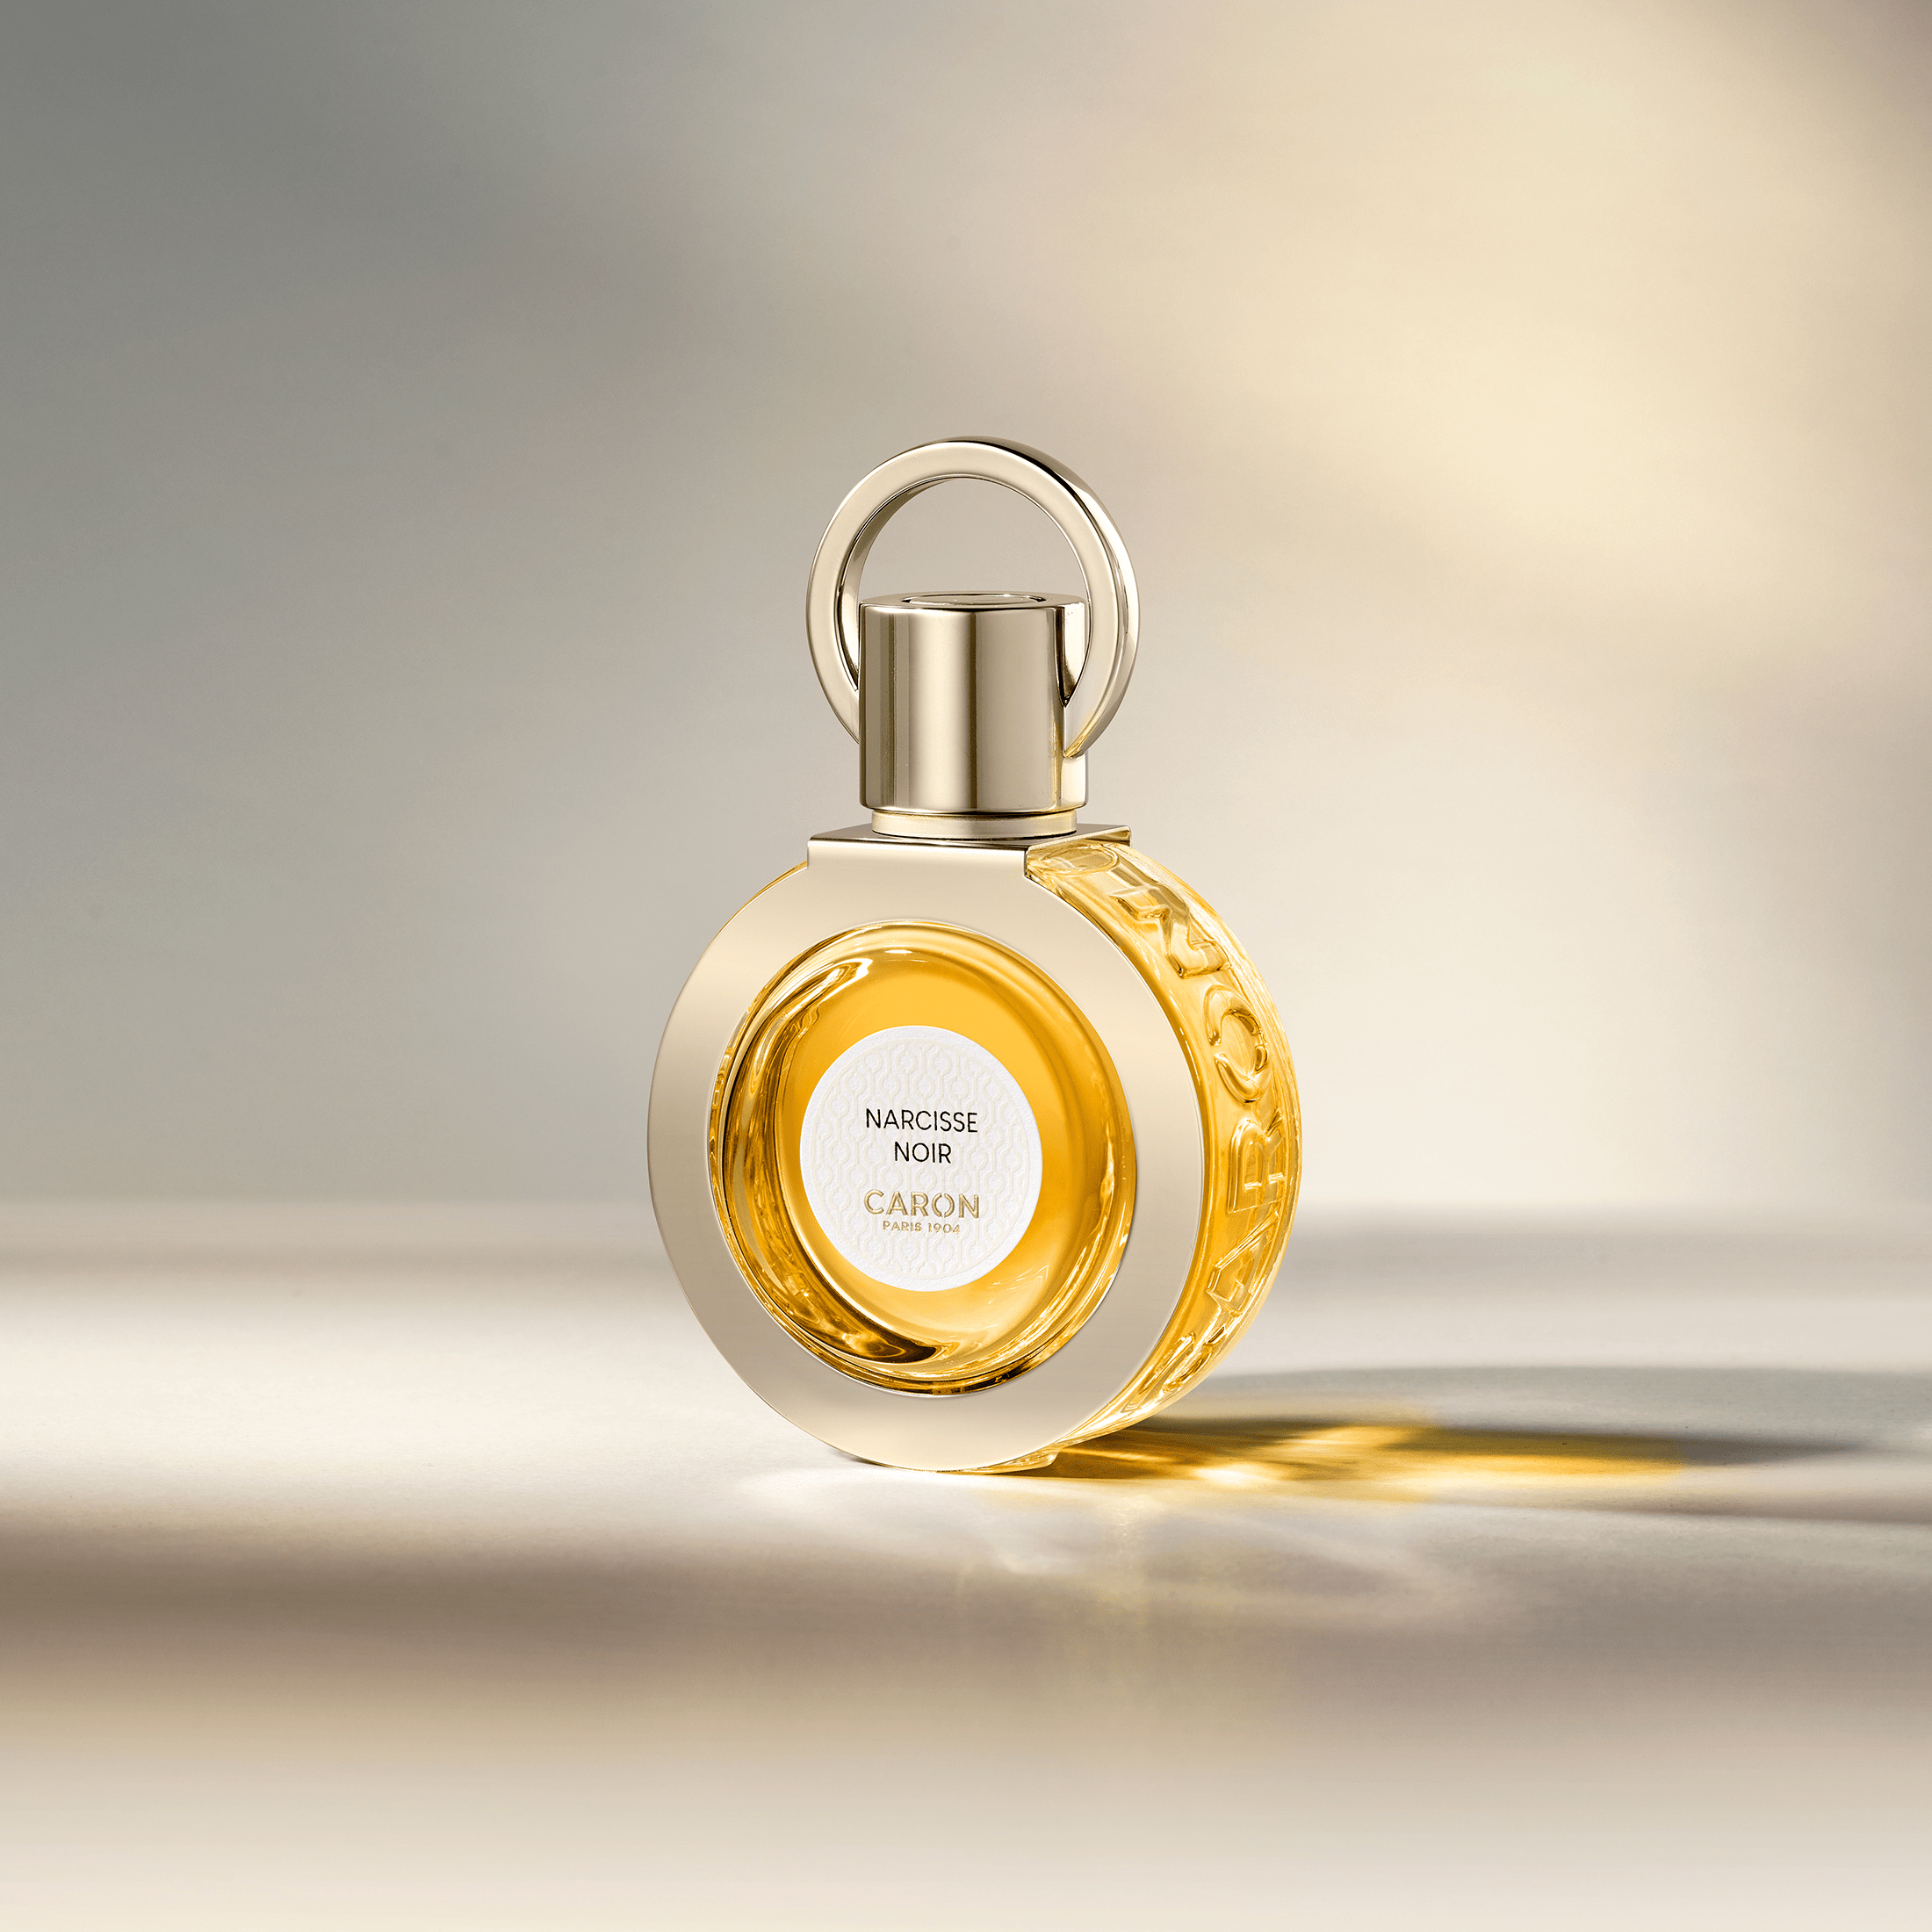 BLEU DE CHANEL Eau De Parfum - 1.7 ml Cologne Sample Spray Atomizer - 100%  Authentic